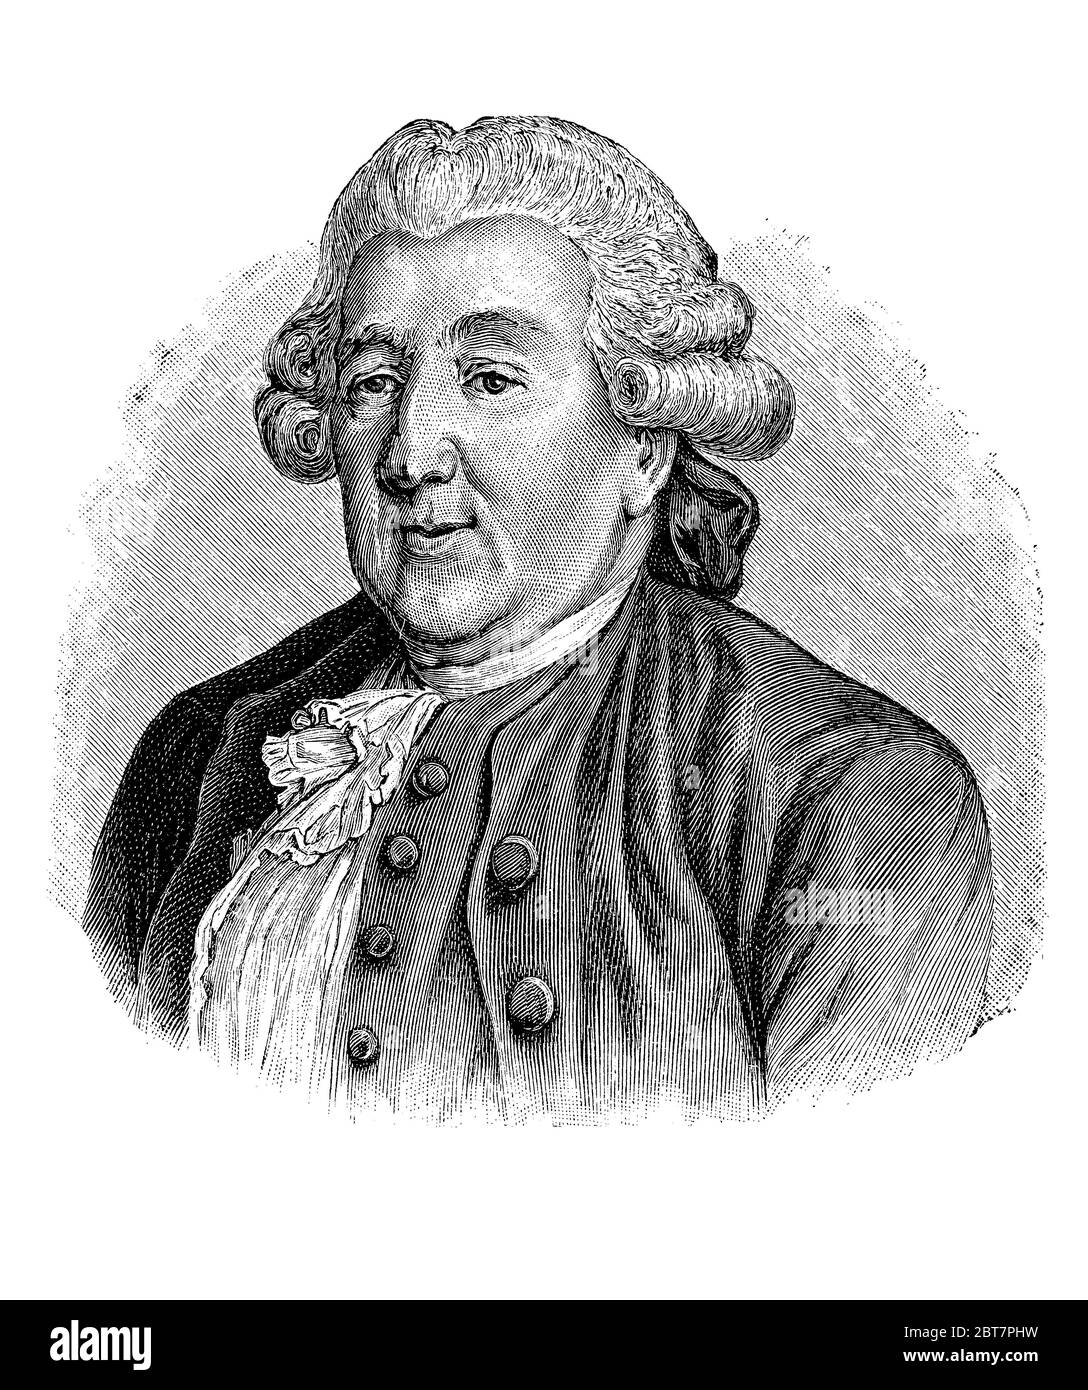 Portrait de Carlo Goldoni (1707 - 1793) célèbre dramaturge italien, auteur de pièces les plus appréciées dans le dialecte vénitien avec la rapresentation de caractères de classe moyenne et le comportement Banque D'Images